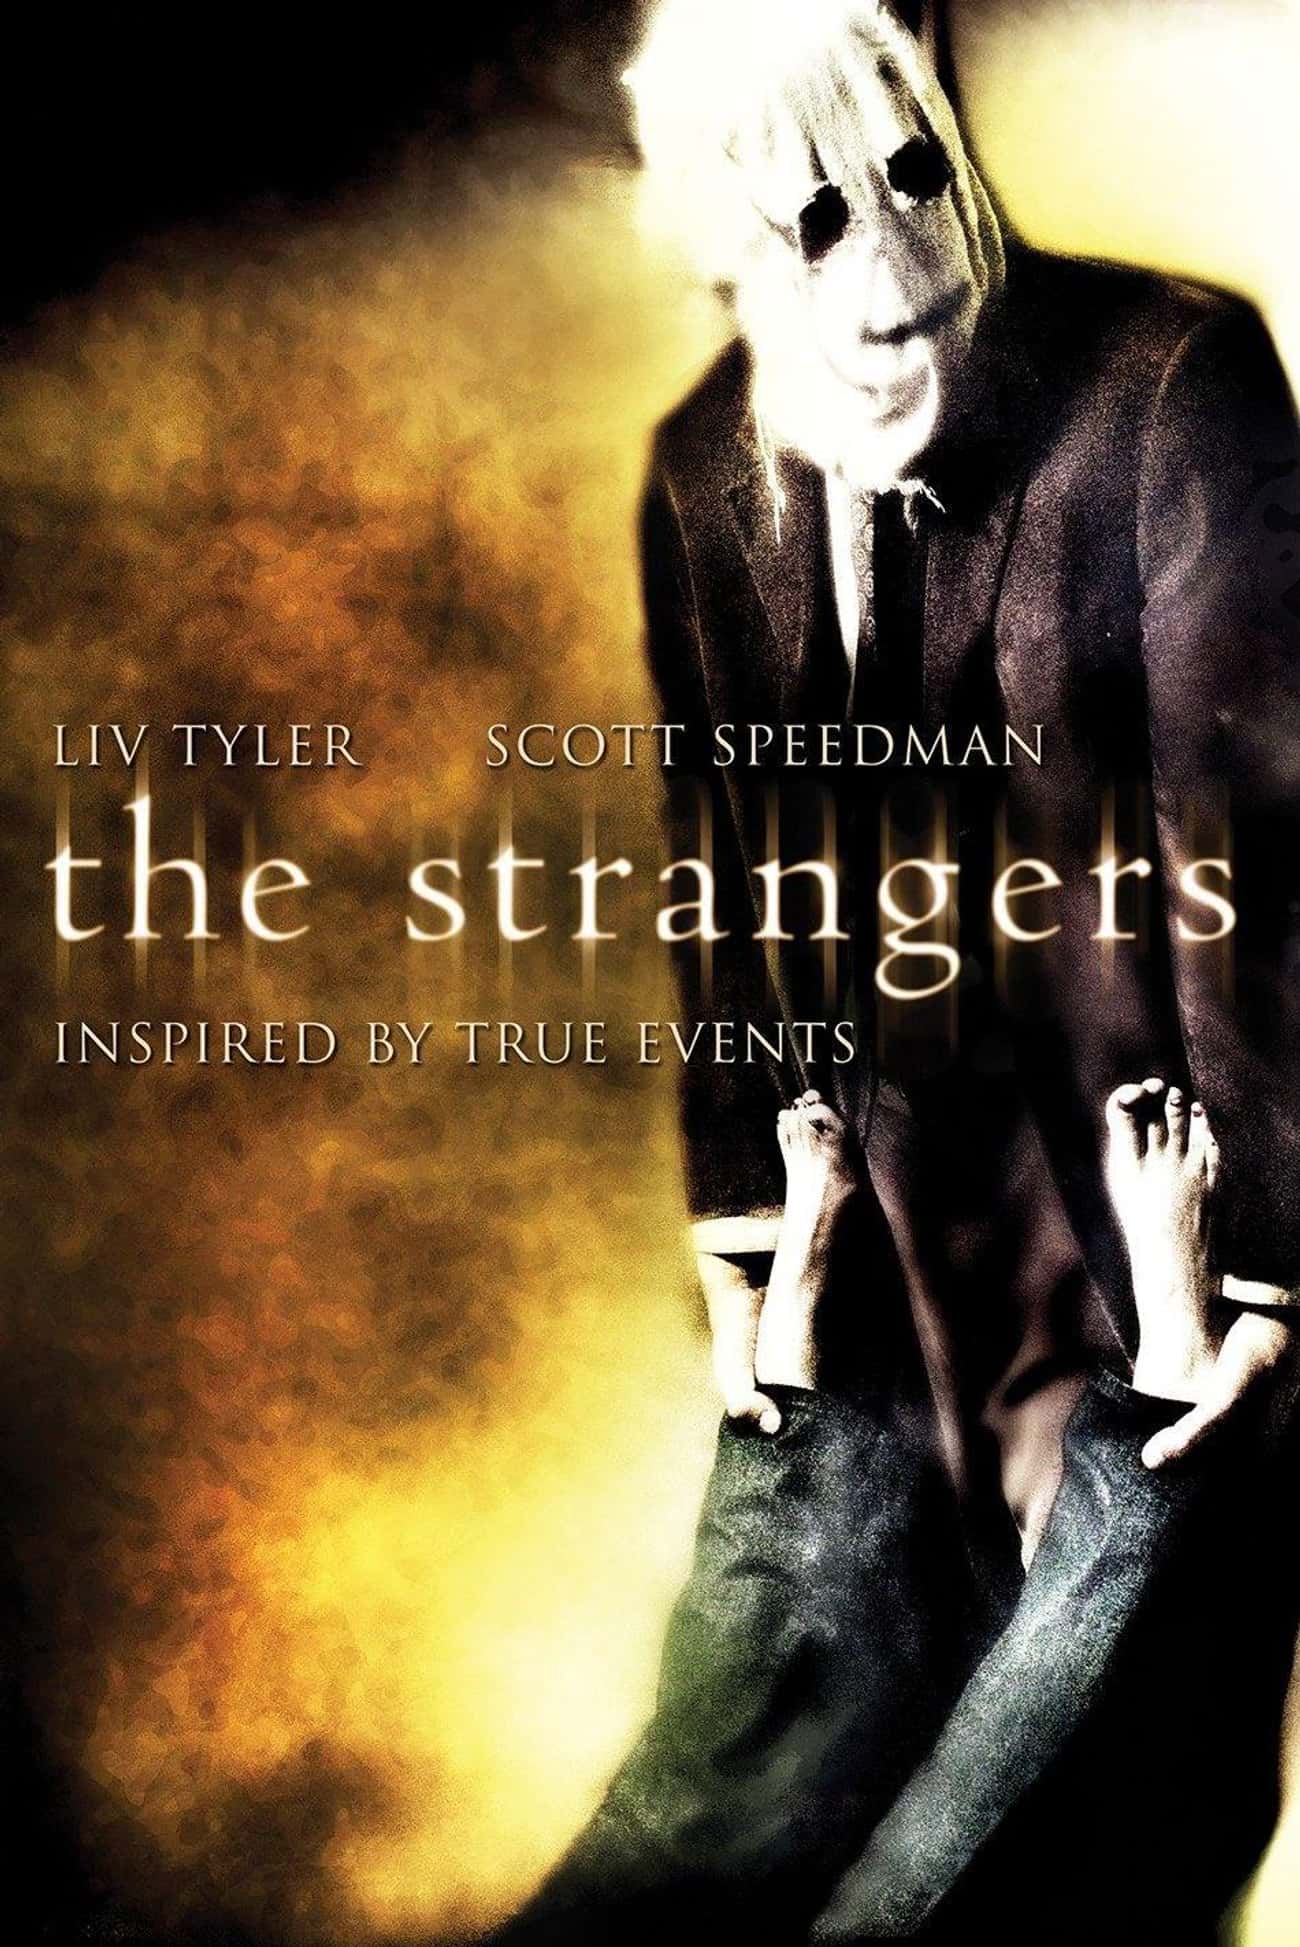 Keddie Murders / 'The Strangers'